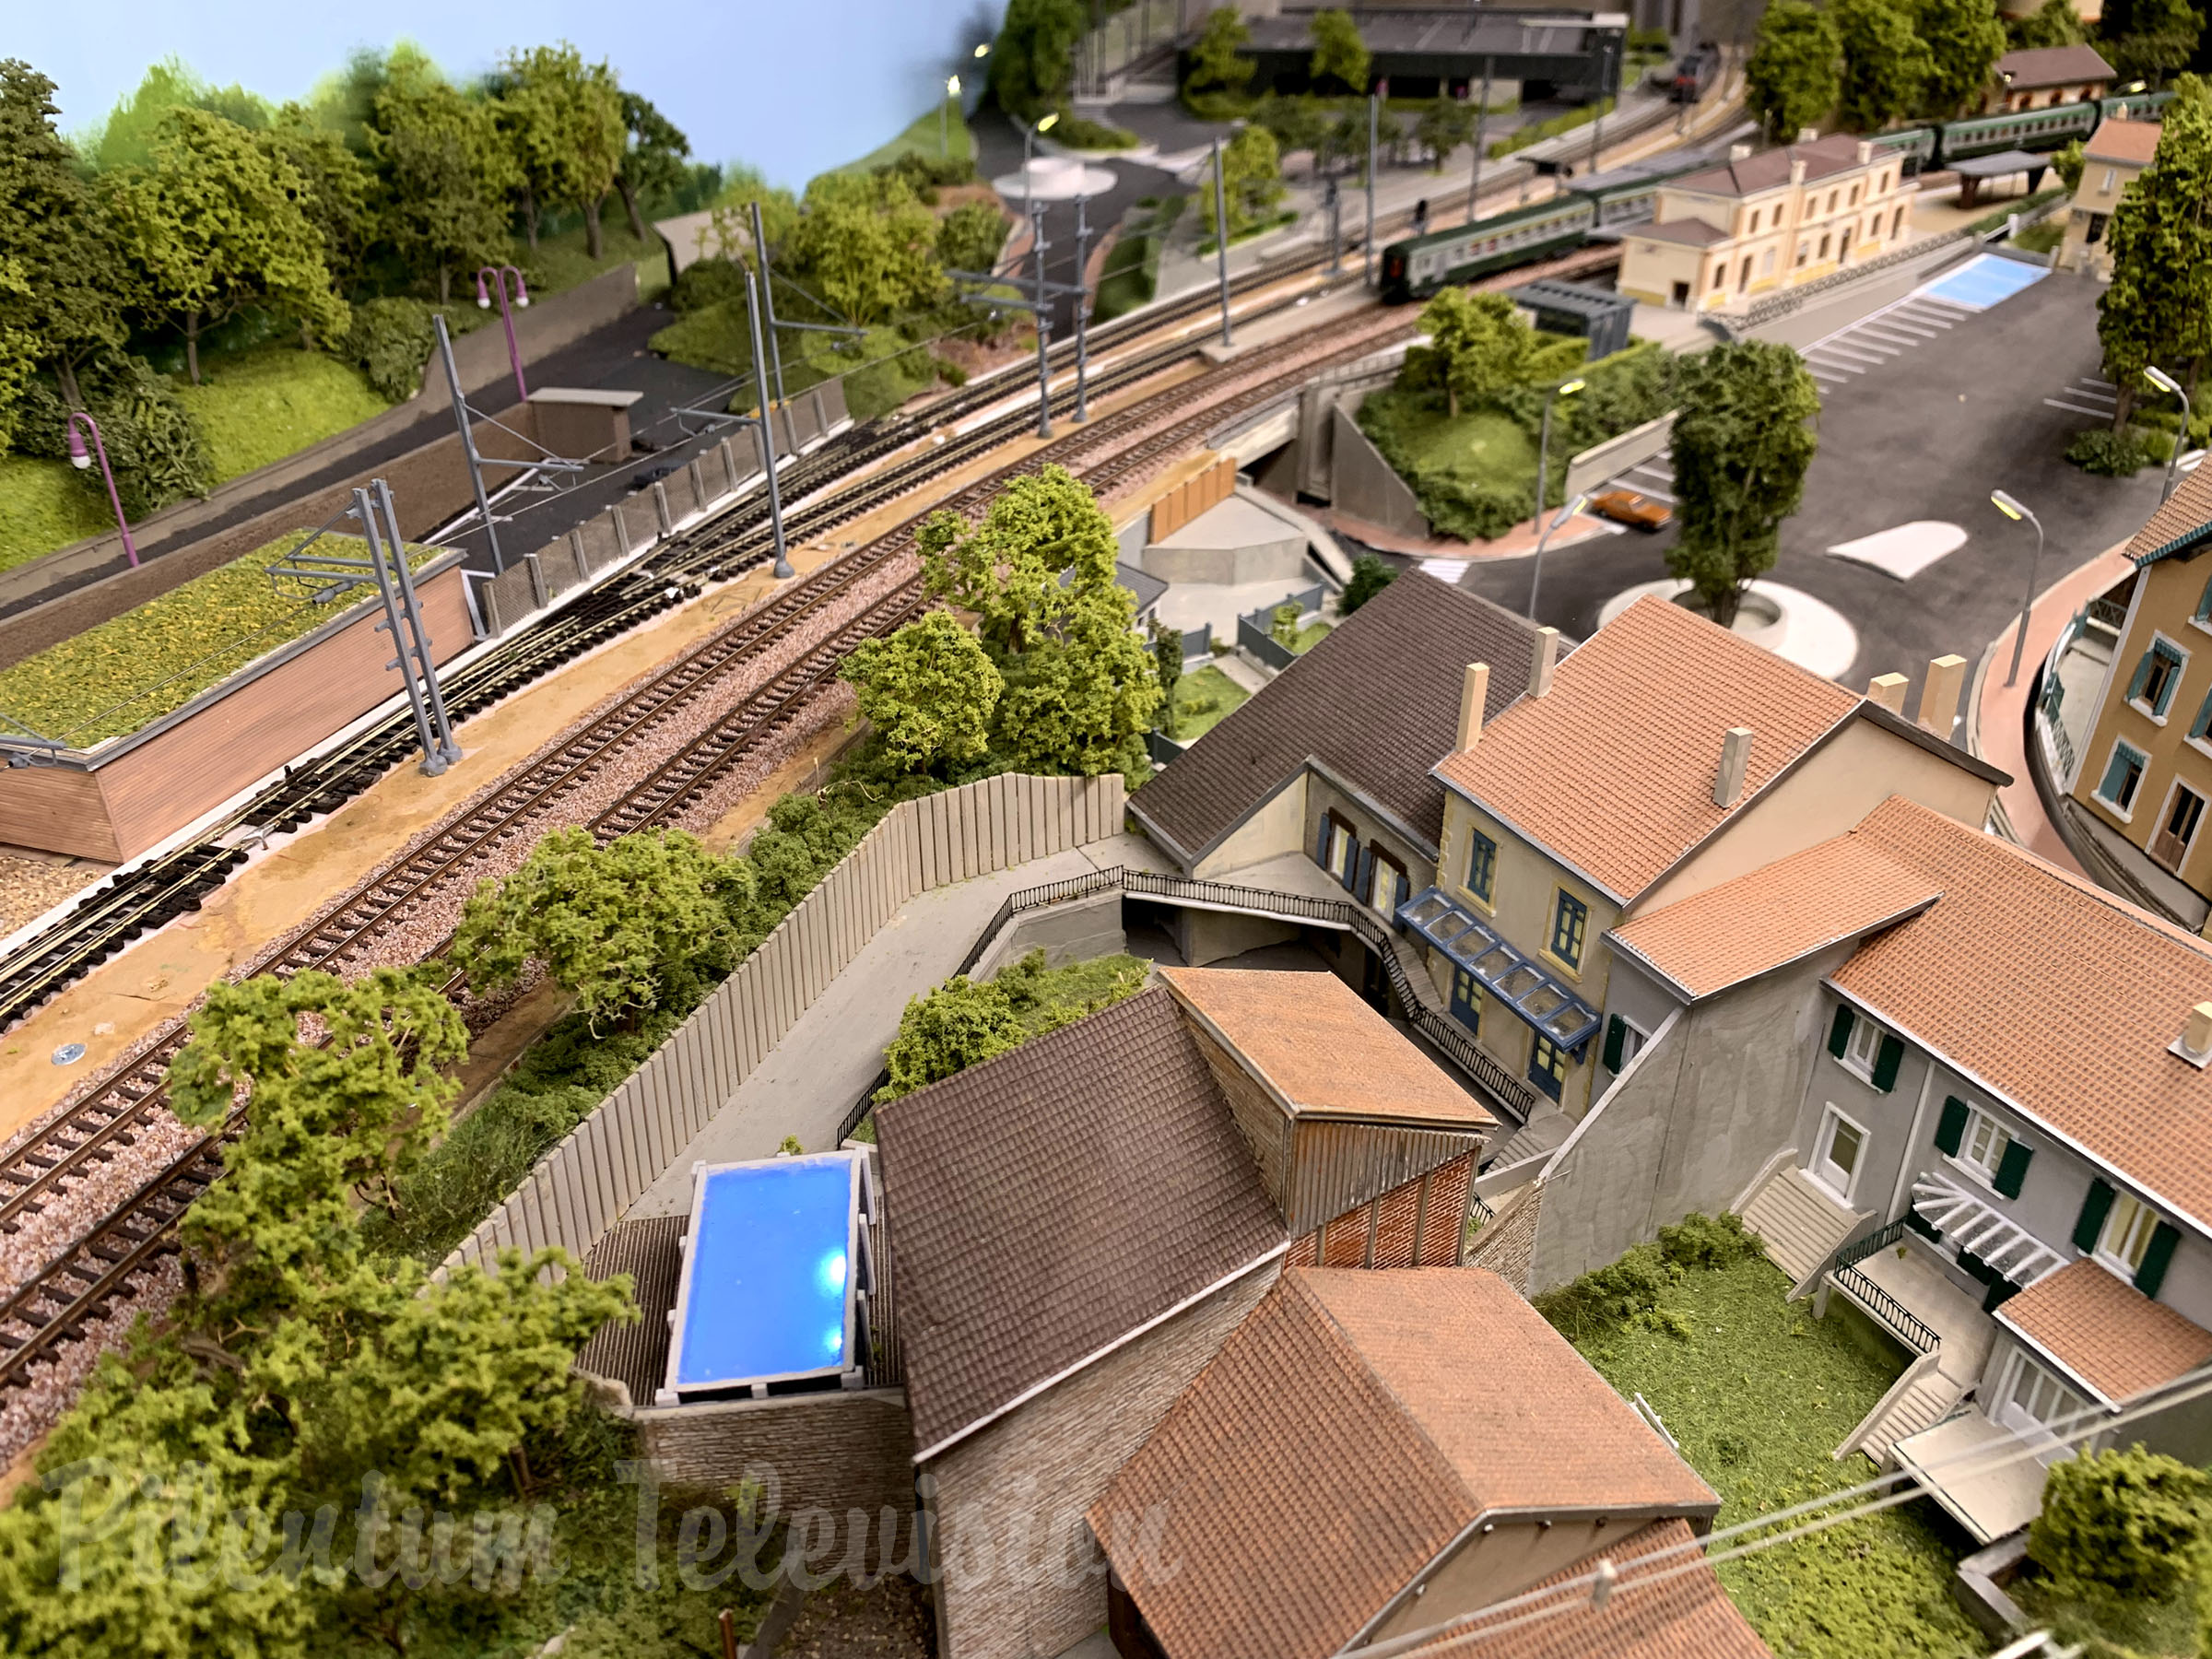 En fransk modeljernbane i skala N og tog fra SNCF på banegården i L’Arbresle